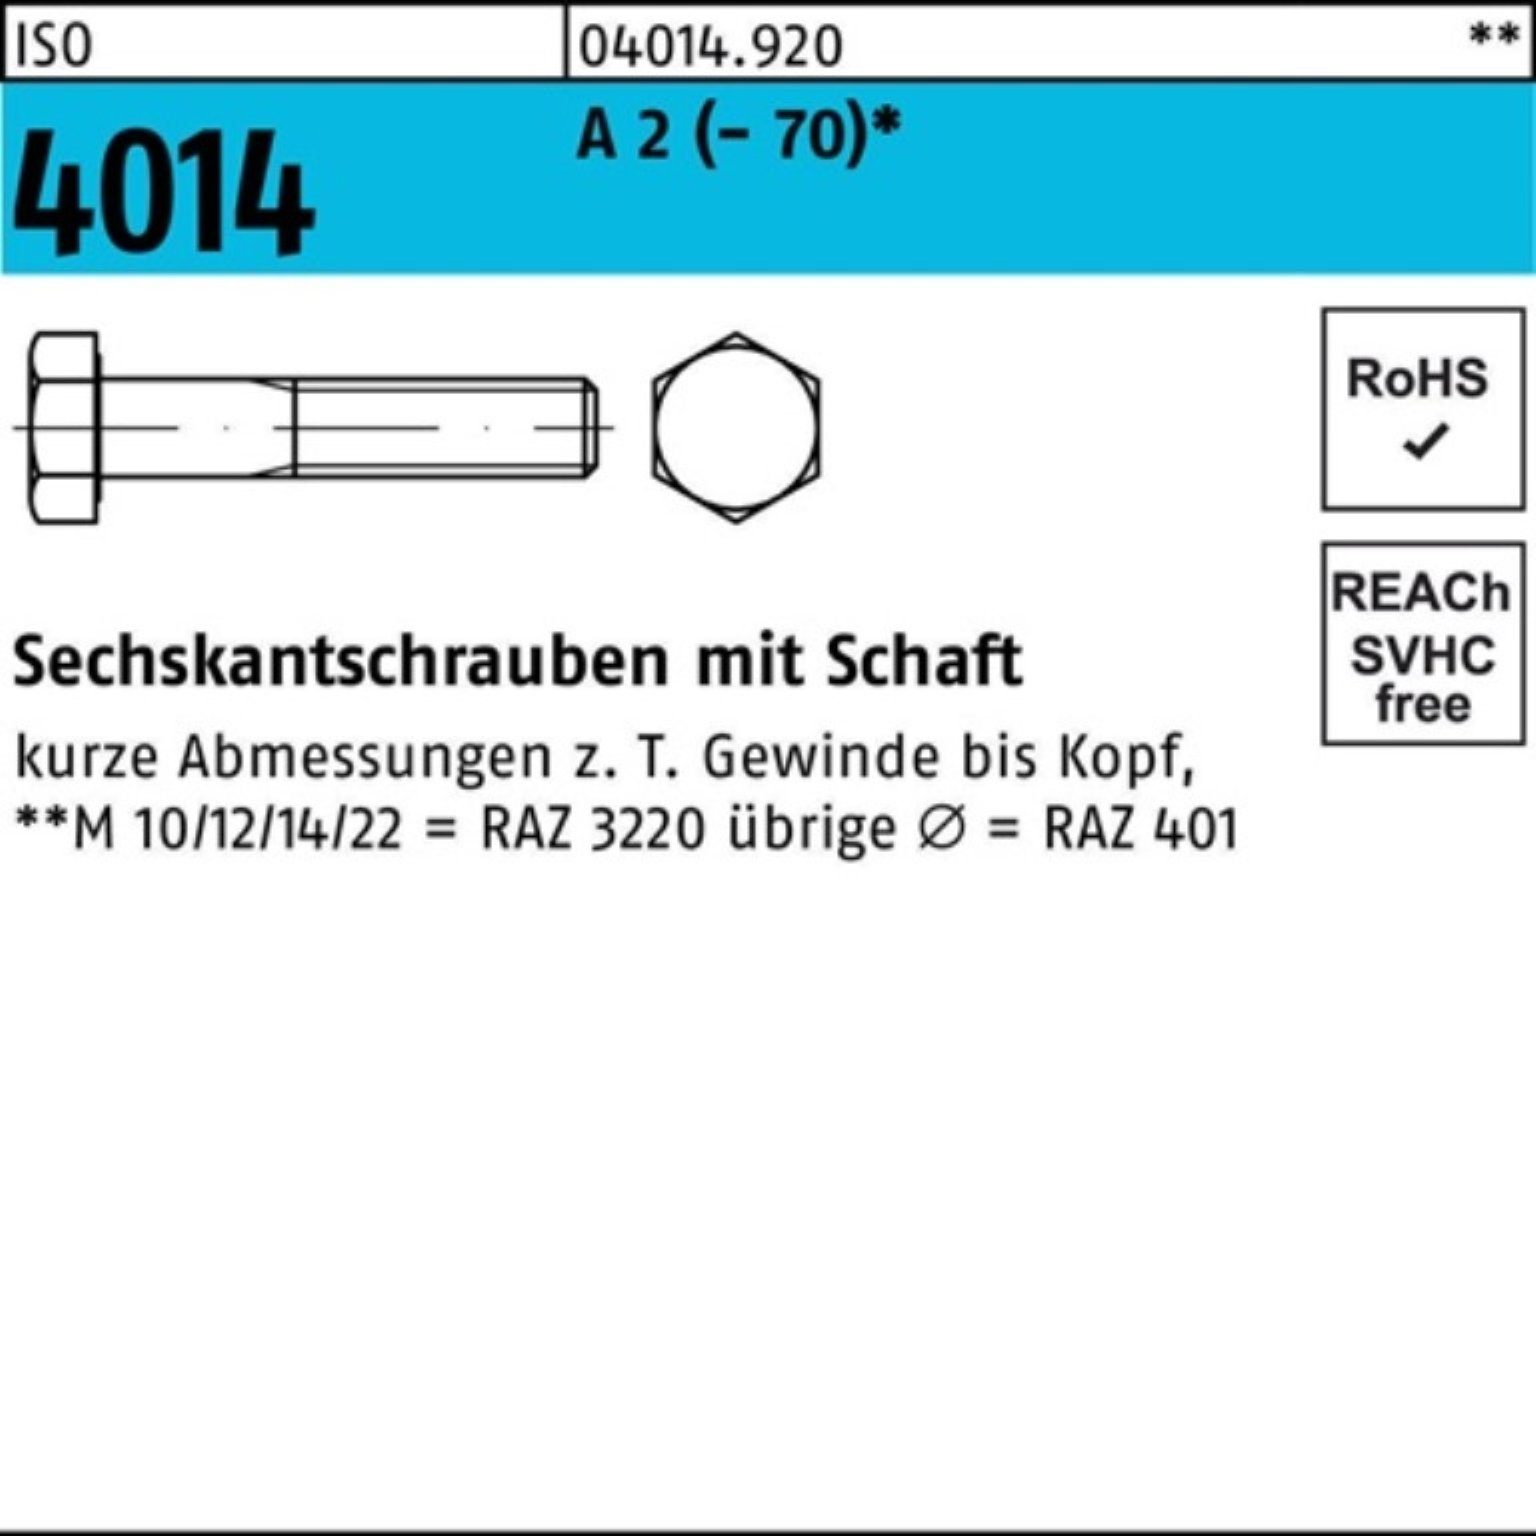 A 2 St Schaft ISO Sechskantschraube M10x Pack 100er 180 1 4014 Sechskantschraube (70) Bufab